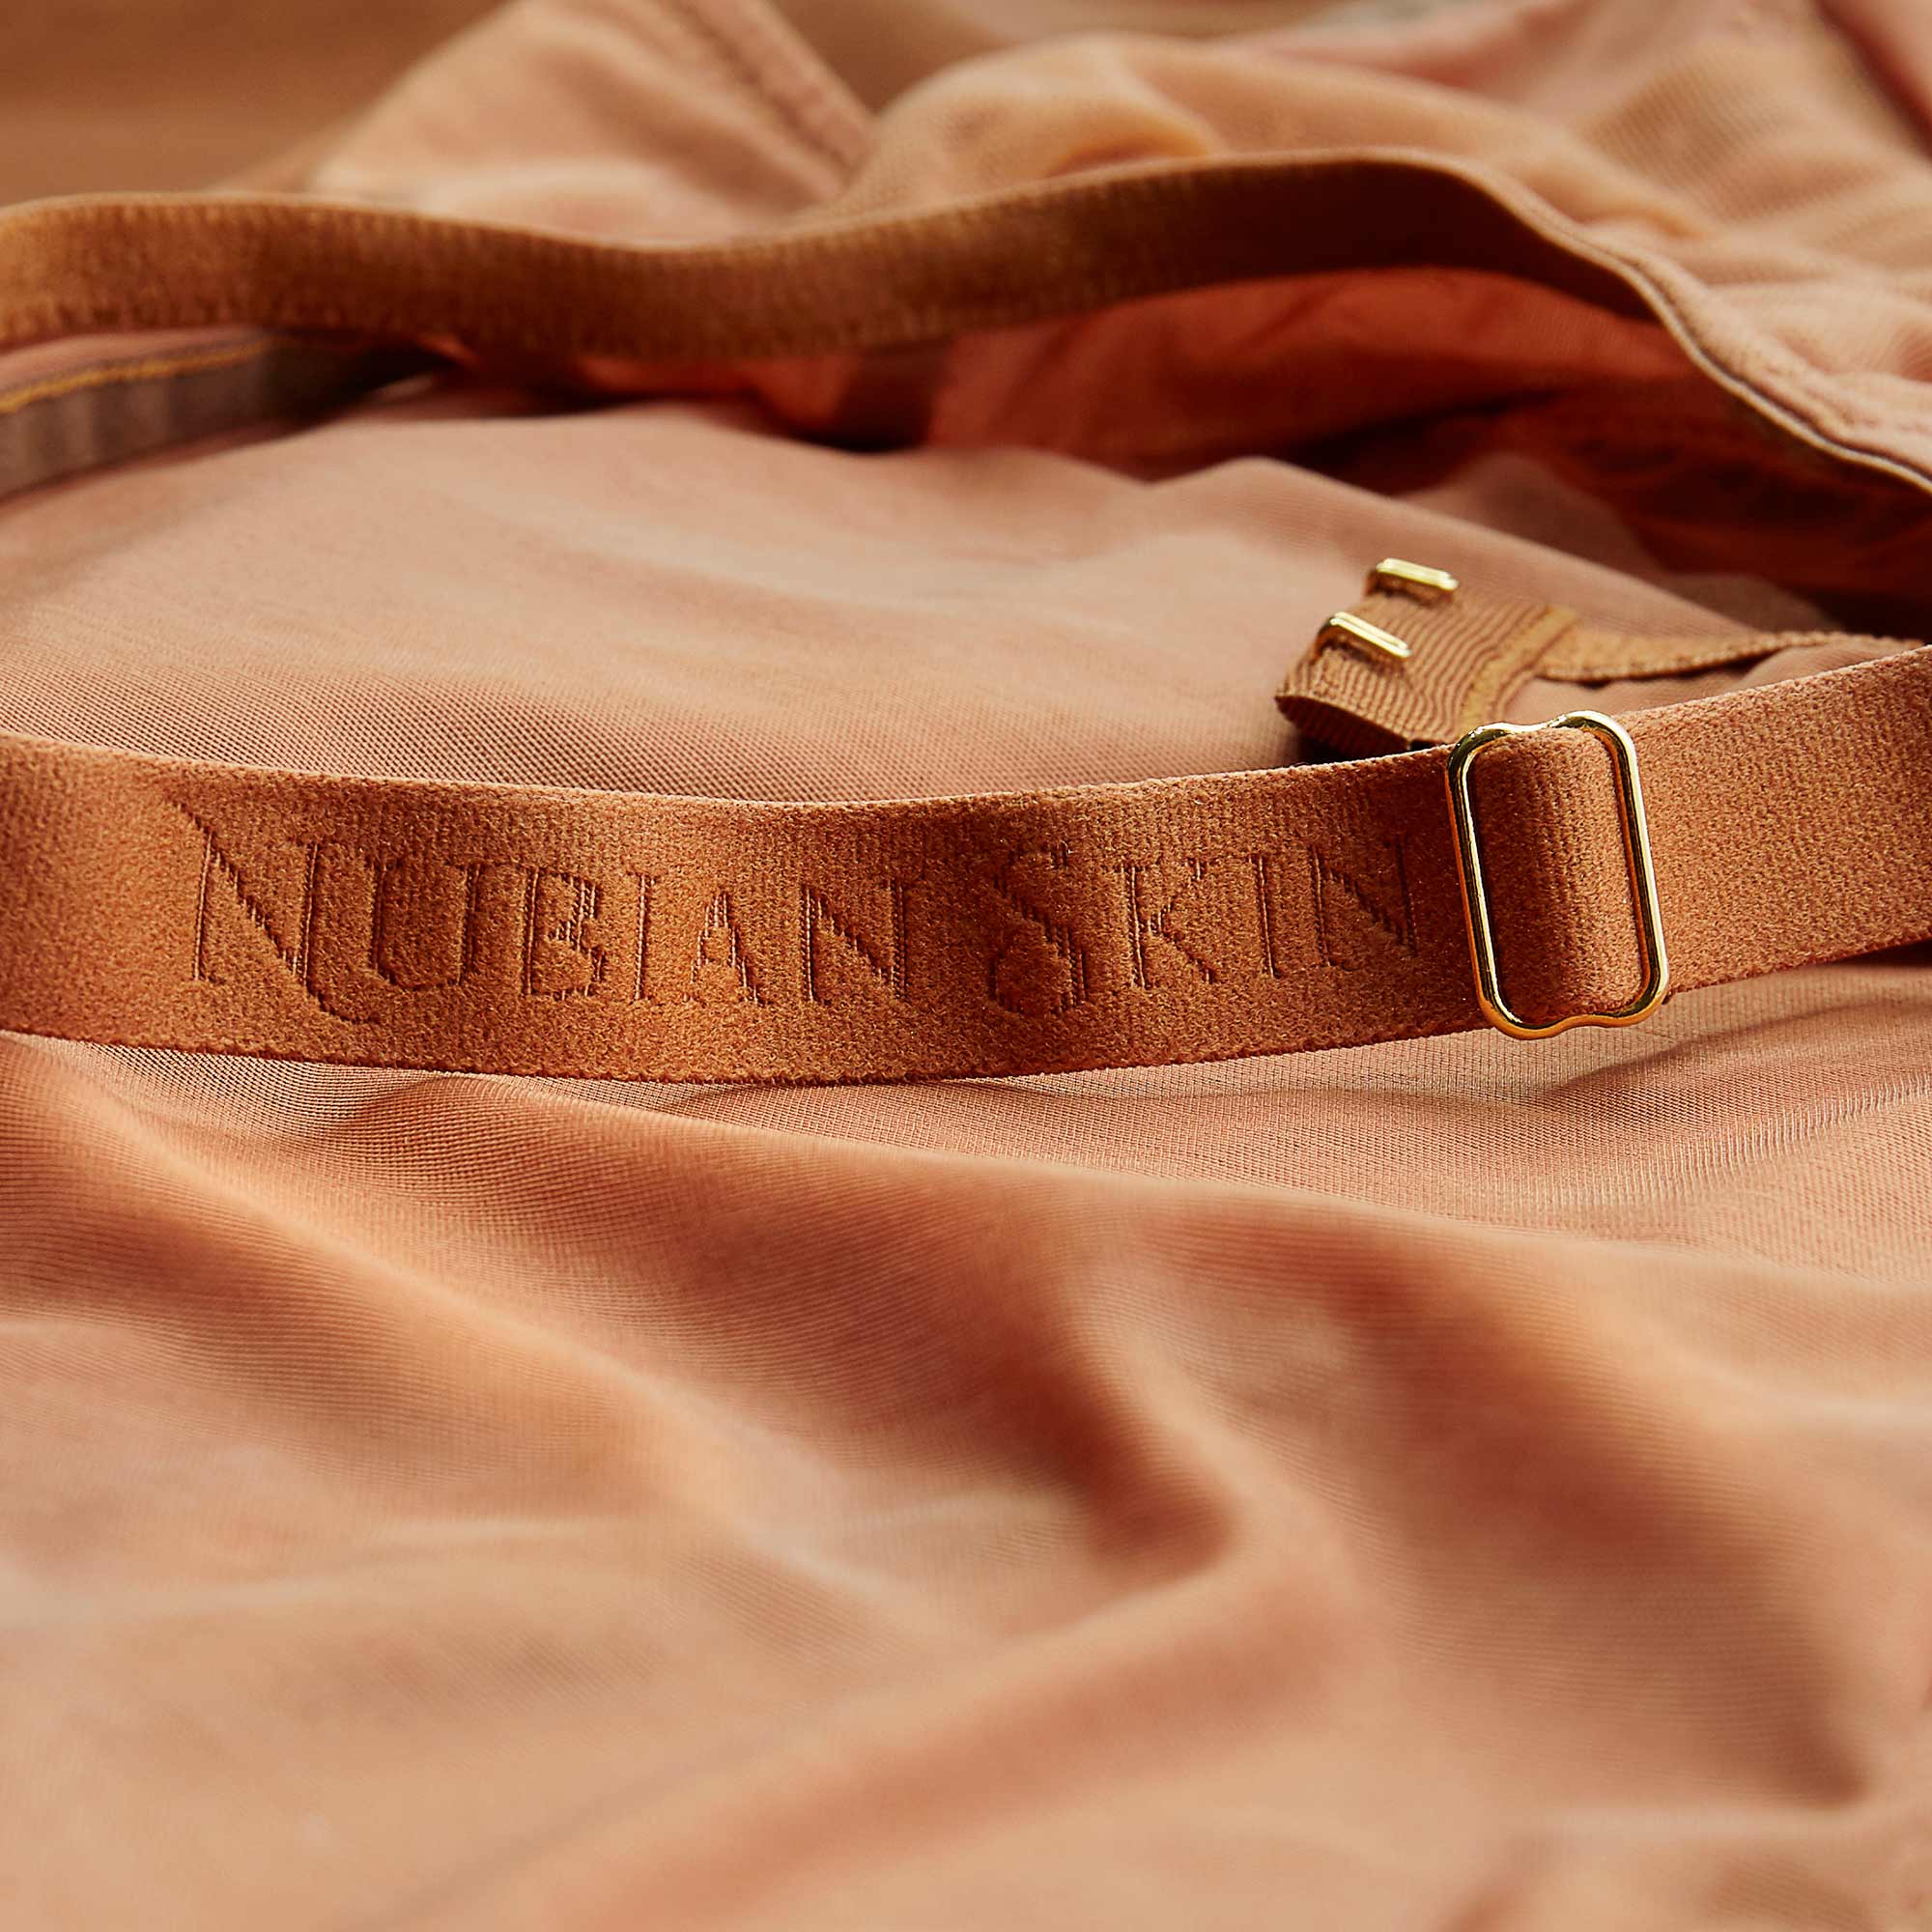 Naked Camisole  Nubian Skin - Nubian Skin